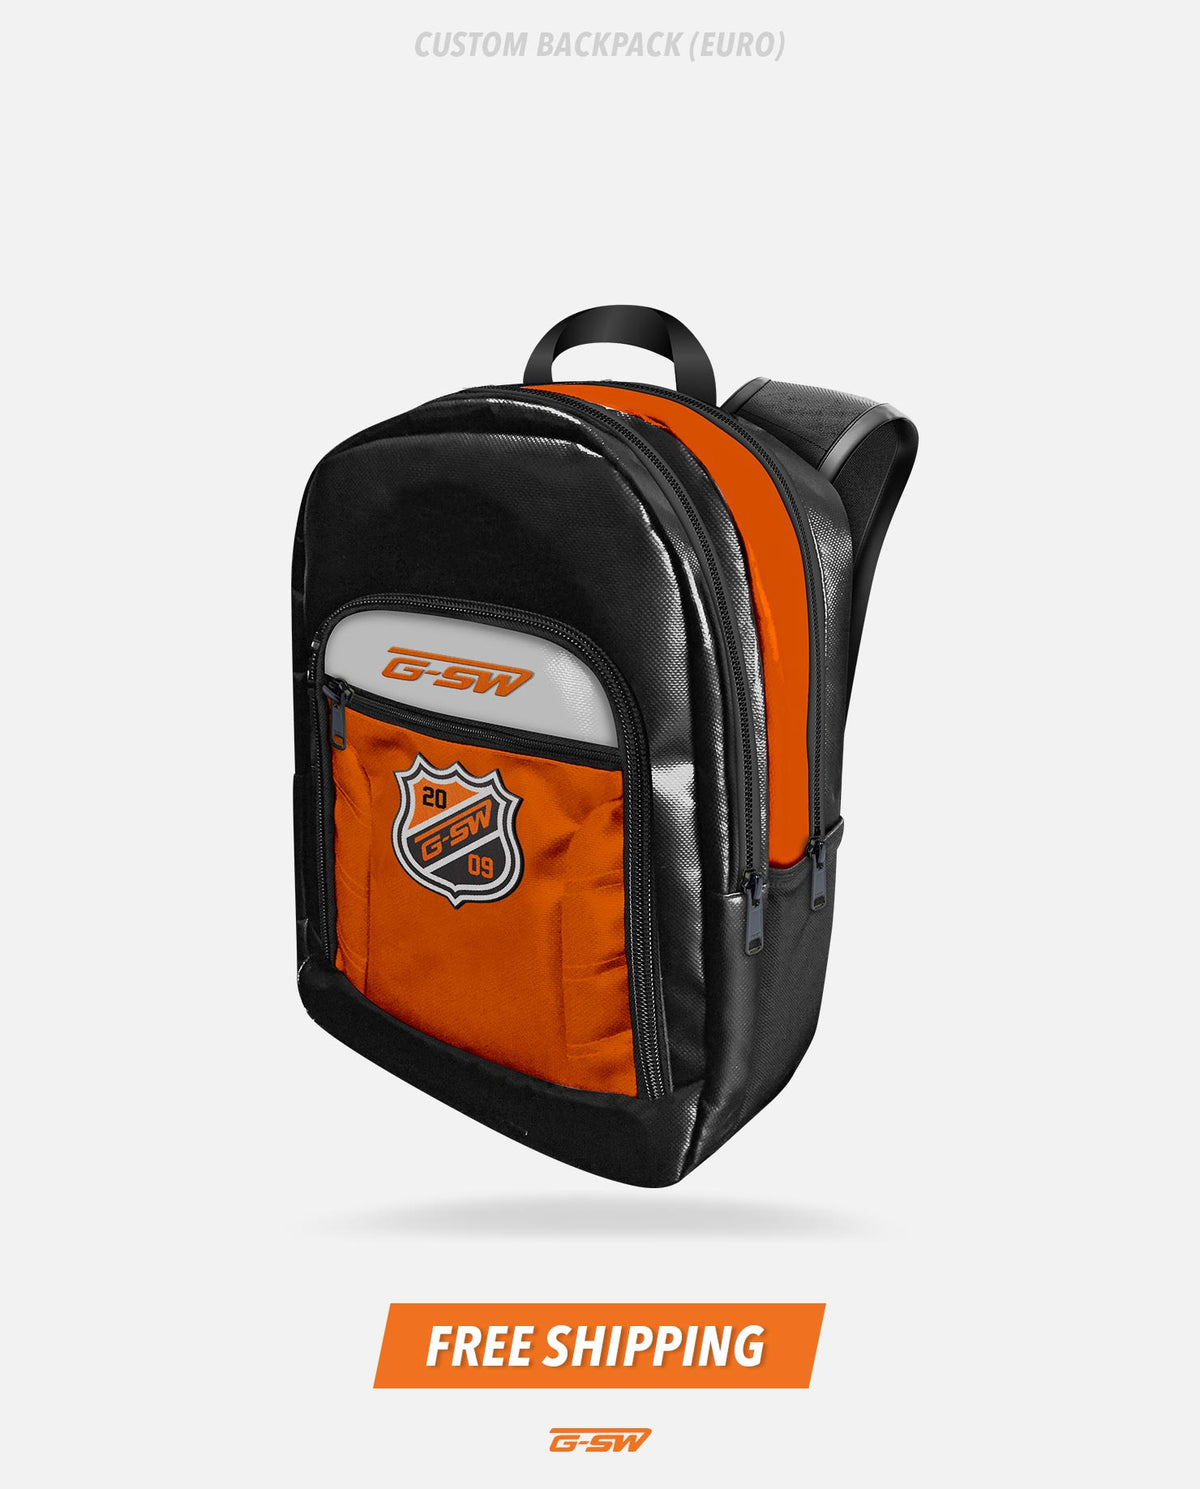 GSW Custom Backpack (Euro)